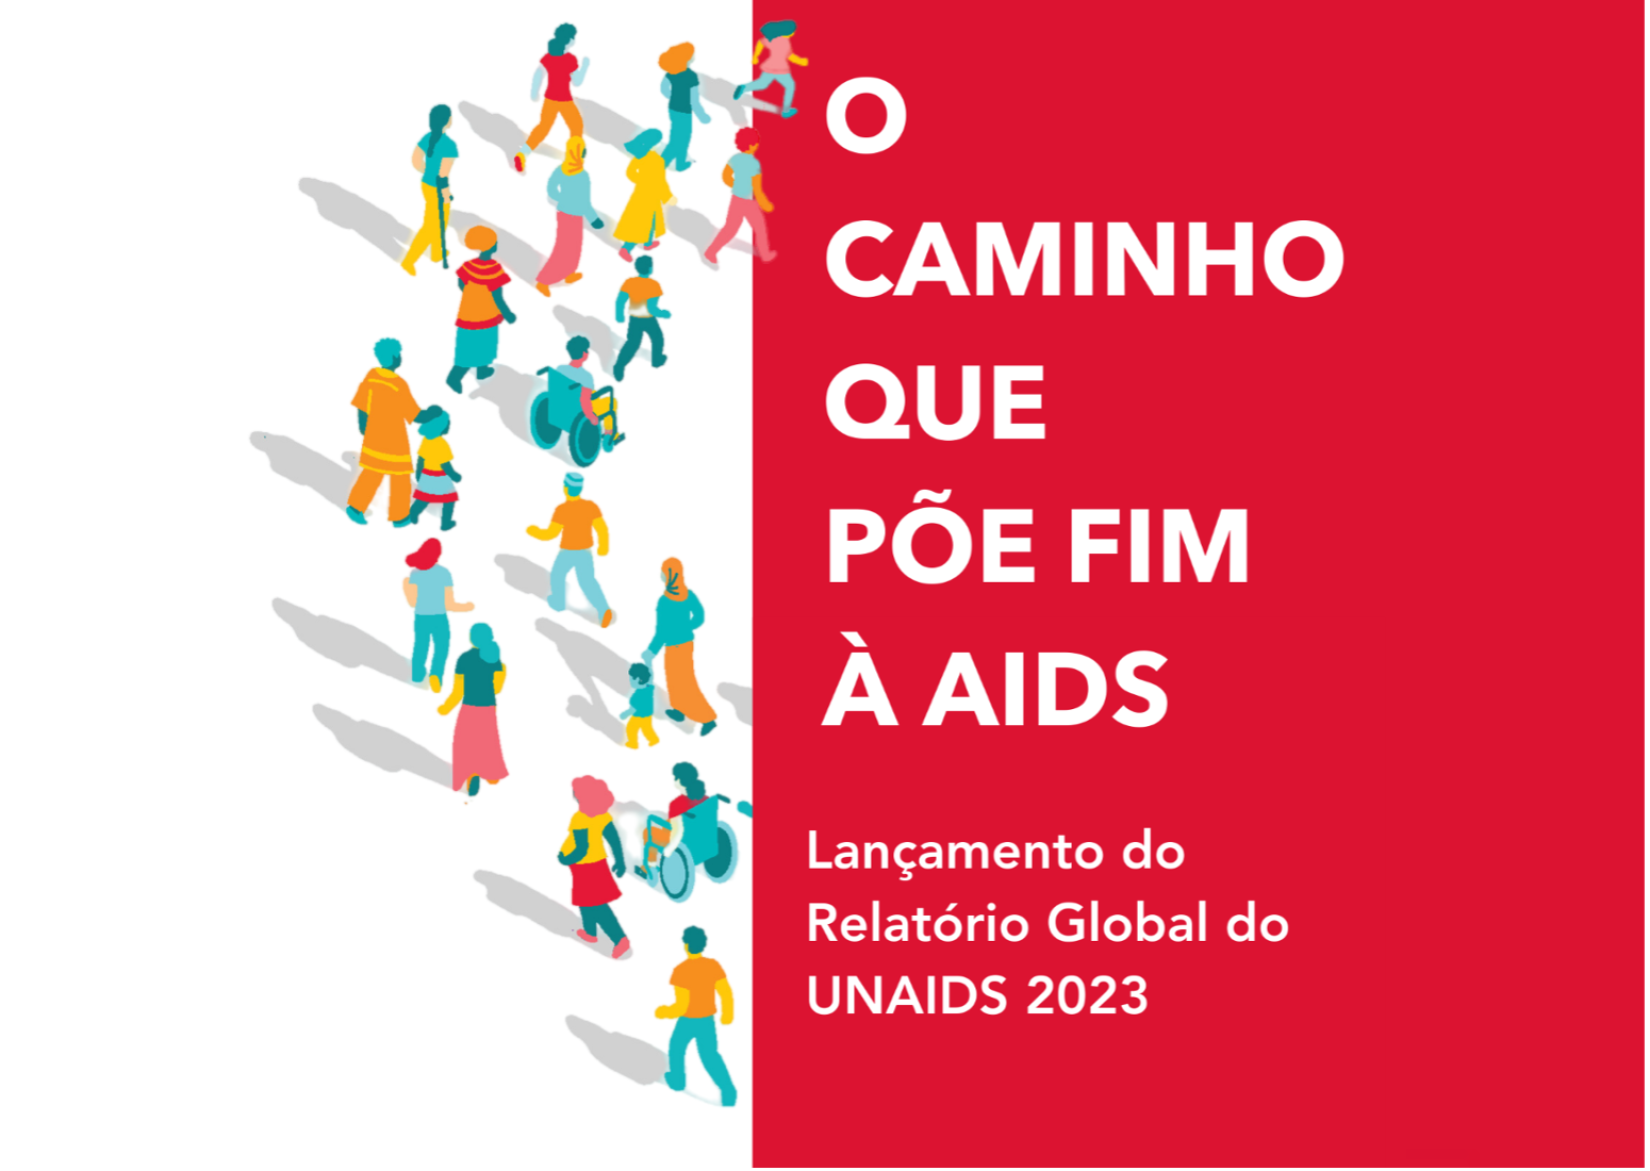 Arte do relatório global do UNAIDS 2023